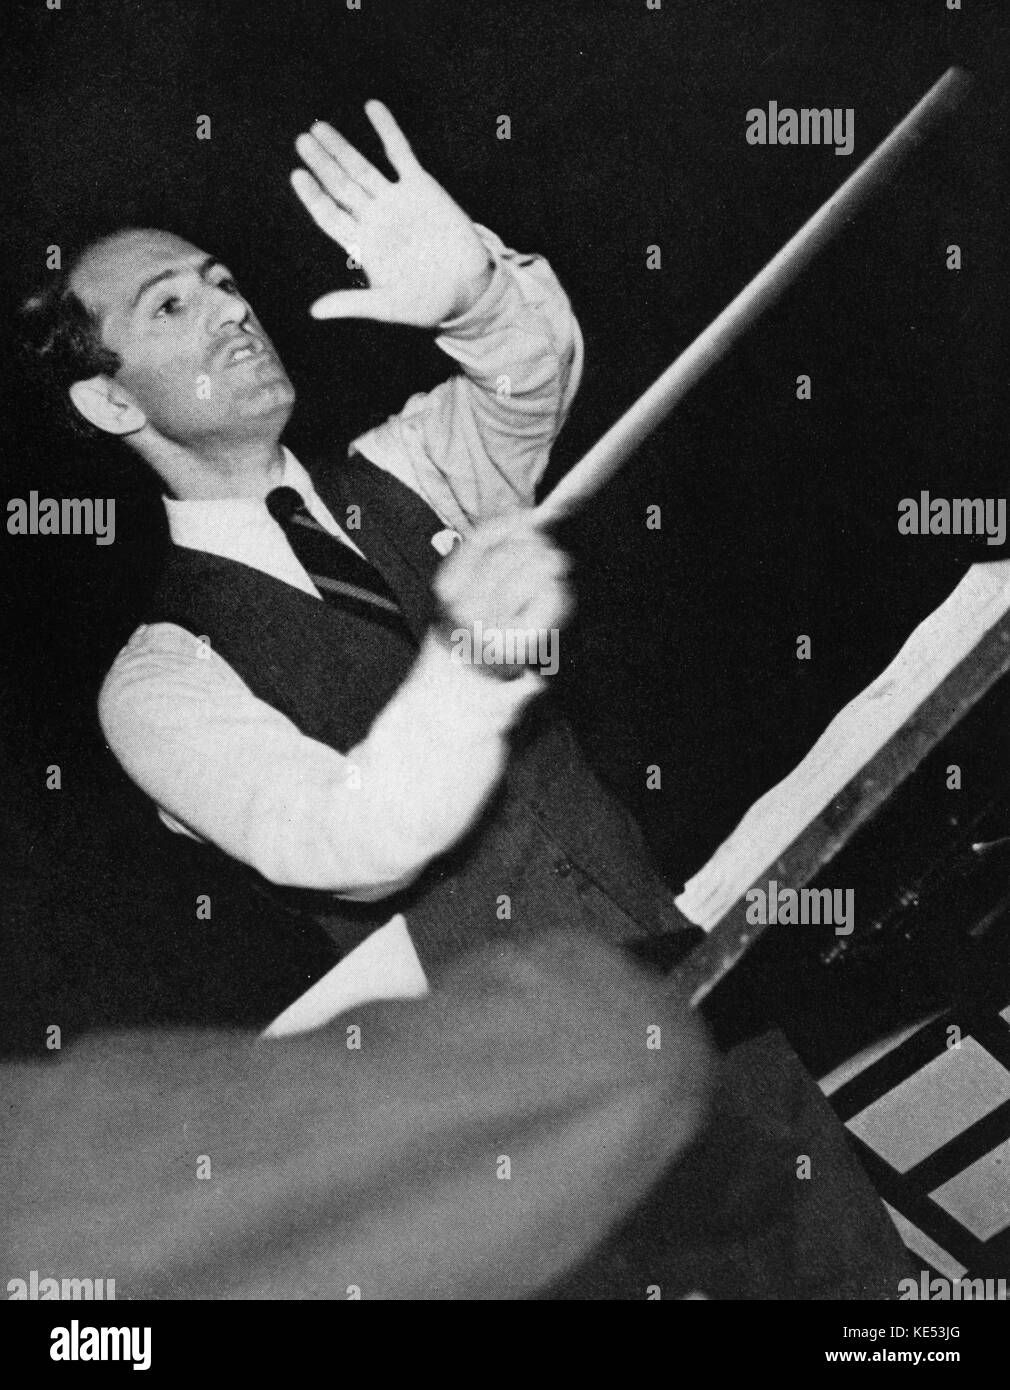 George Gershwin - Realización de ensayo de orquesta. Pianista y compositor norteamericano, el 26 de septiembre de 1898 - 11 de julio de 1937 Foto de stock